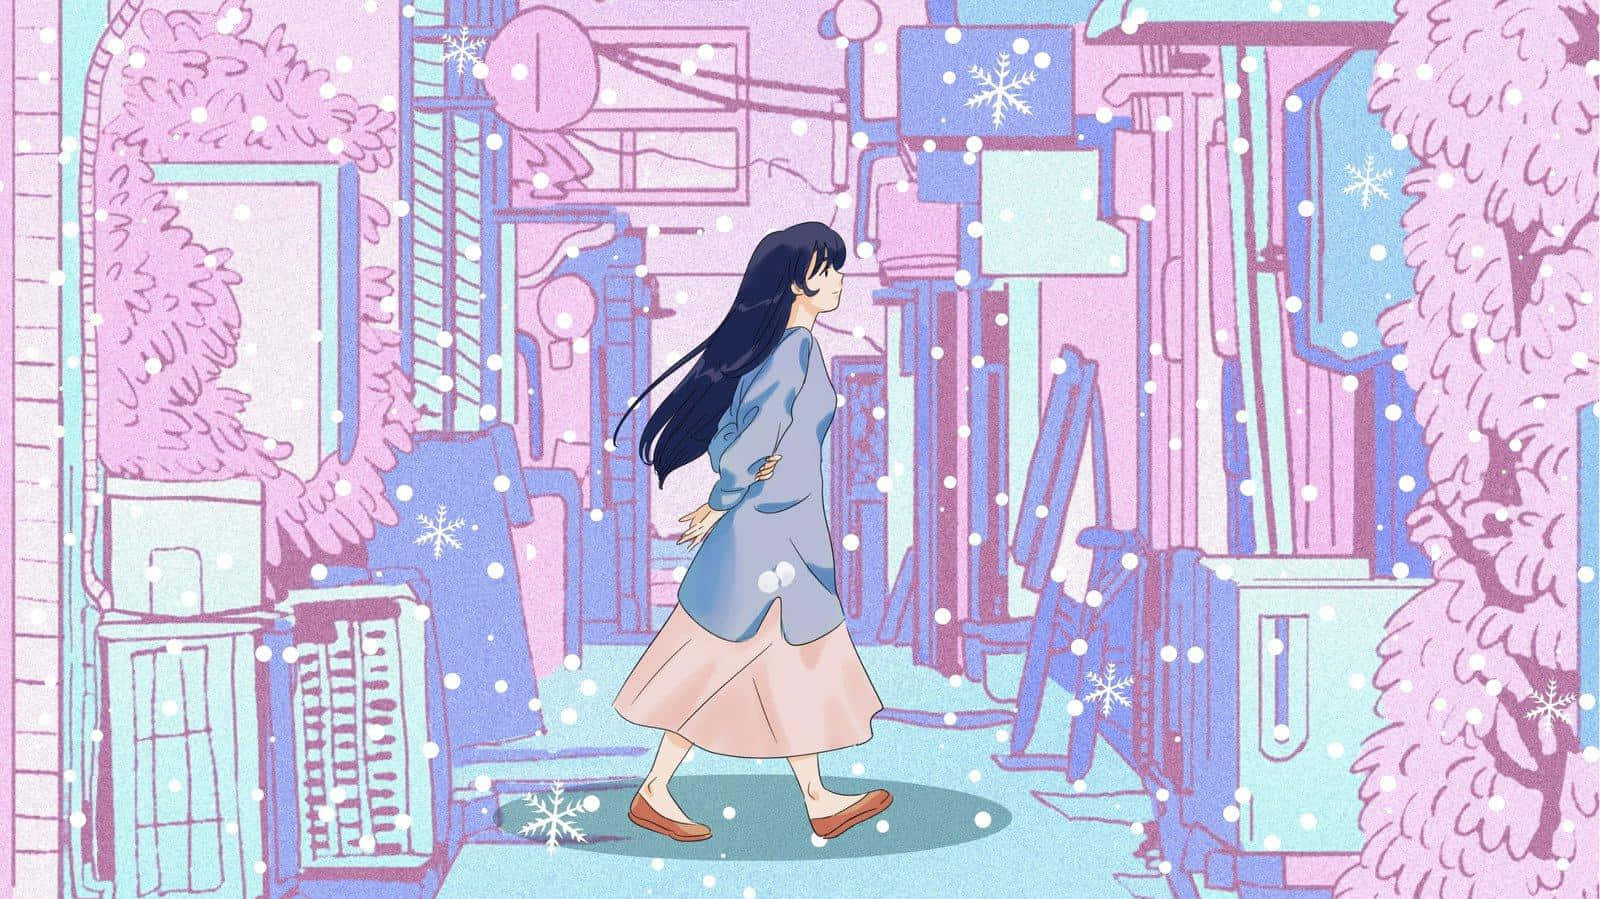 Anime Girlin Futuristic Cityscape Wallpaper